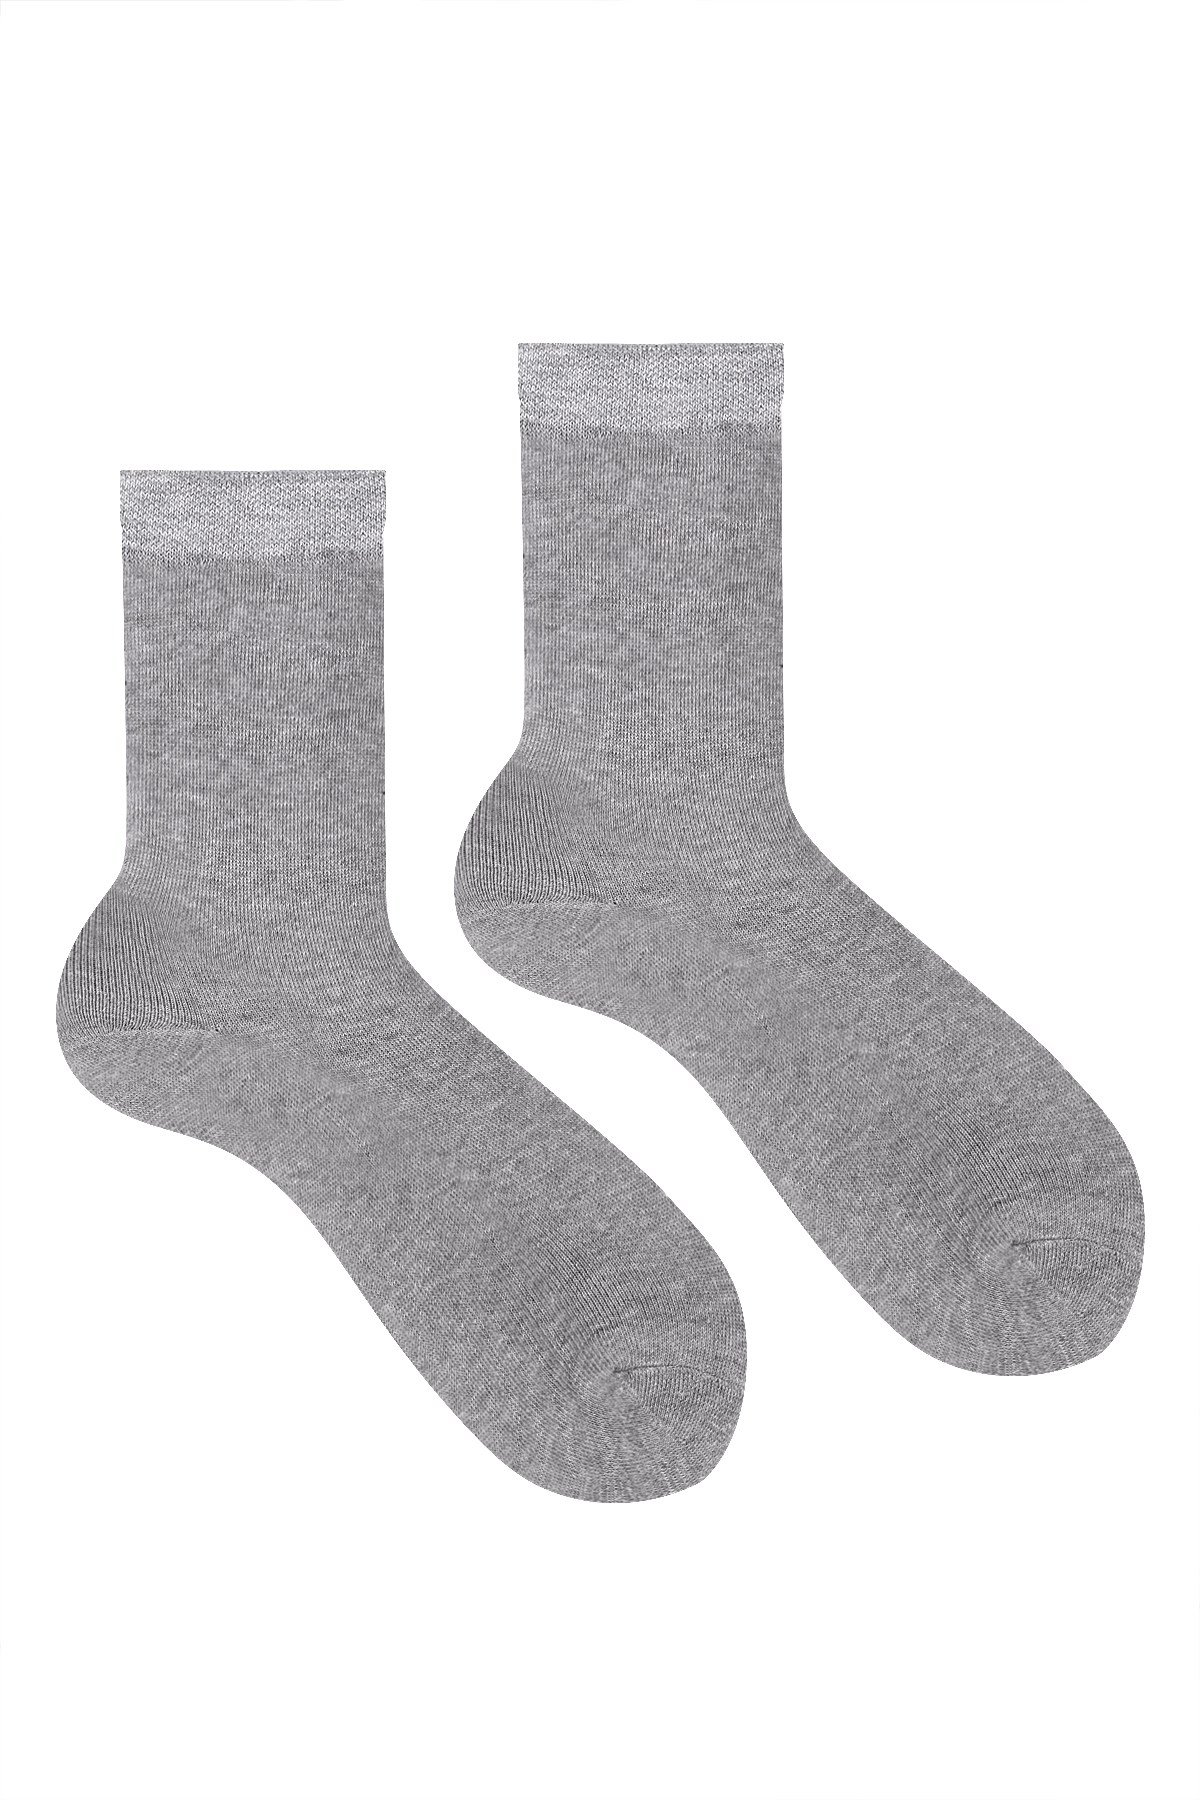 4 Çift Kadın Havlu Soket Çorap Kışlık Dayanıklı Topuk Ve Burun